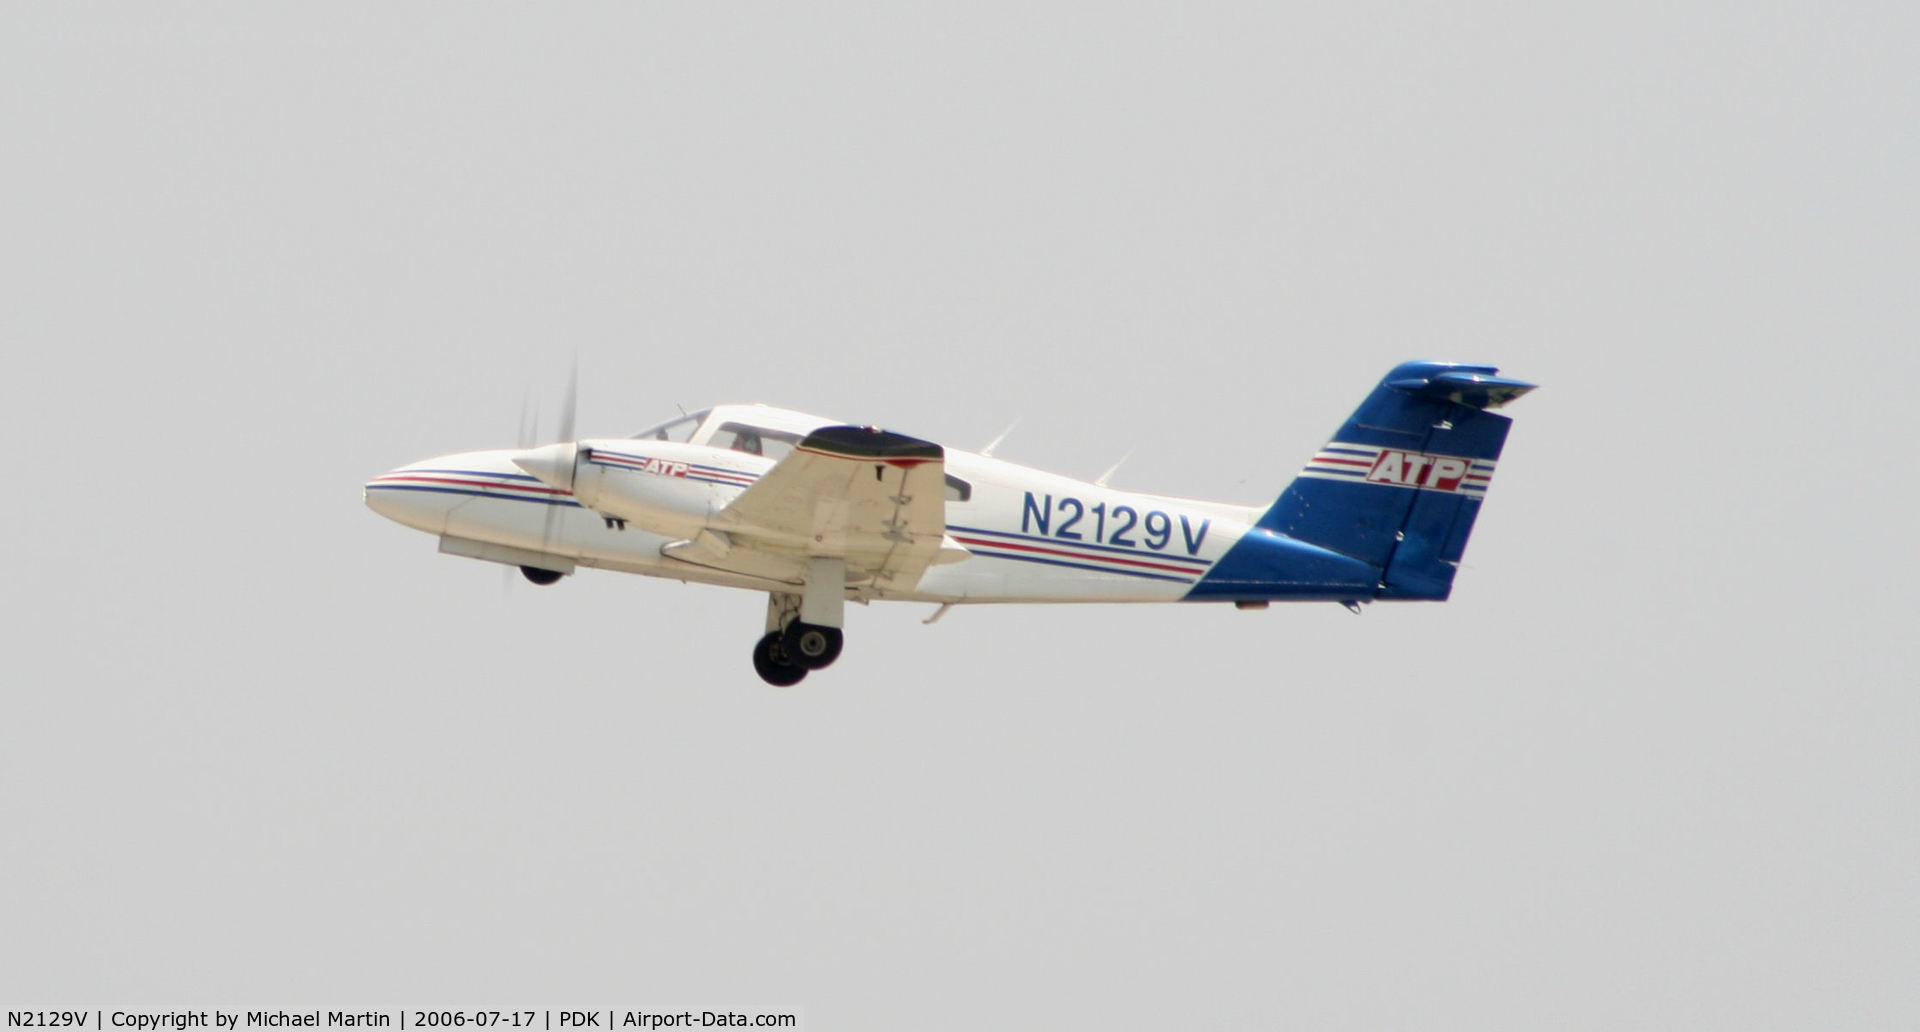 N2129V, 1979 Piper PA-44-180 Seminole C/N 44-7995264, Departing Runway 2R